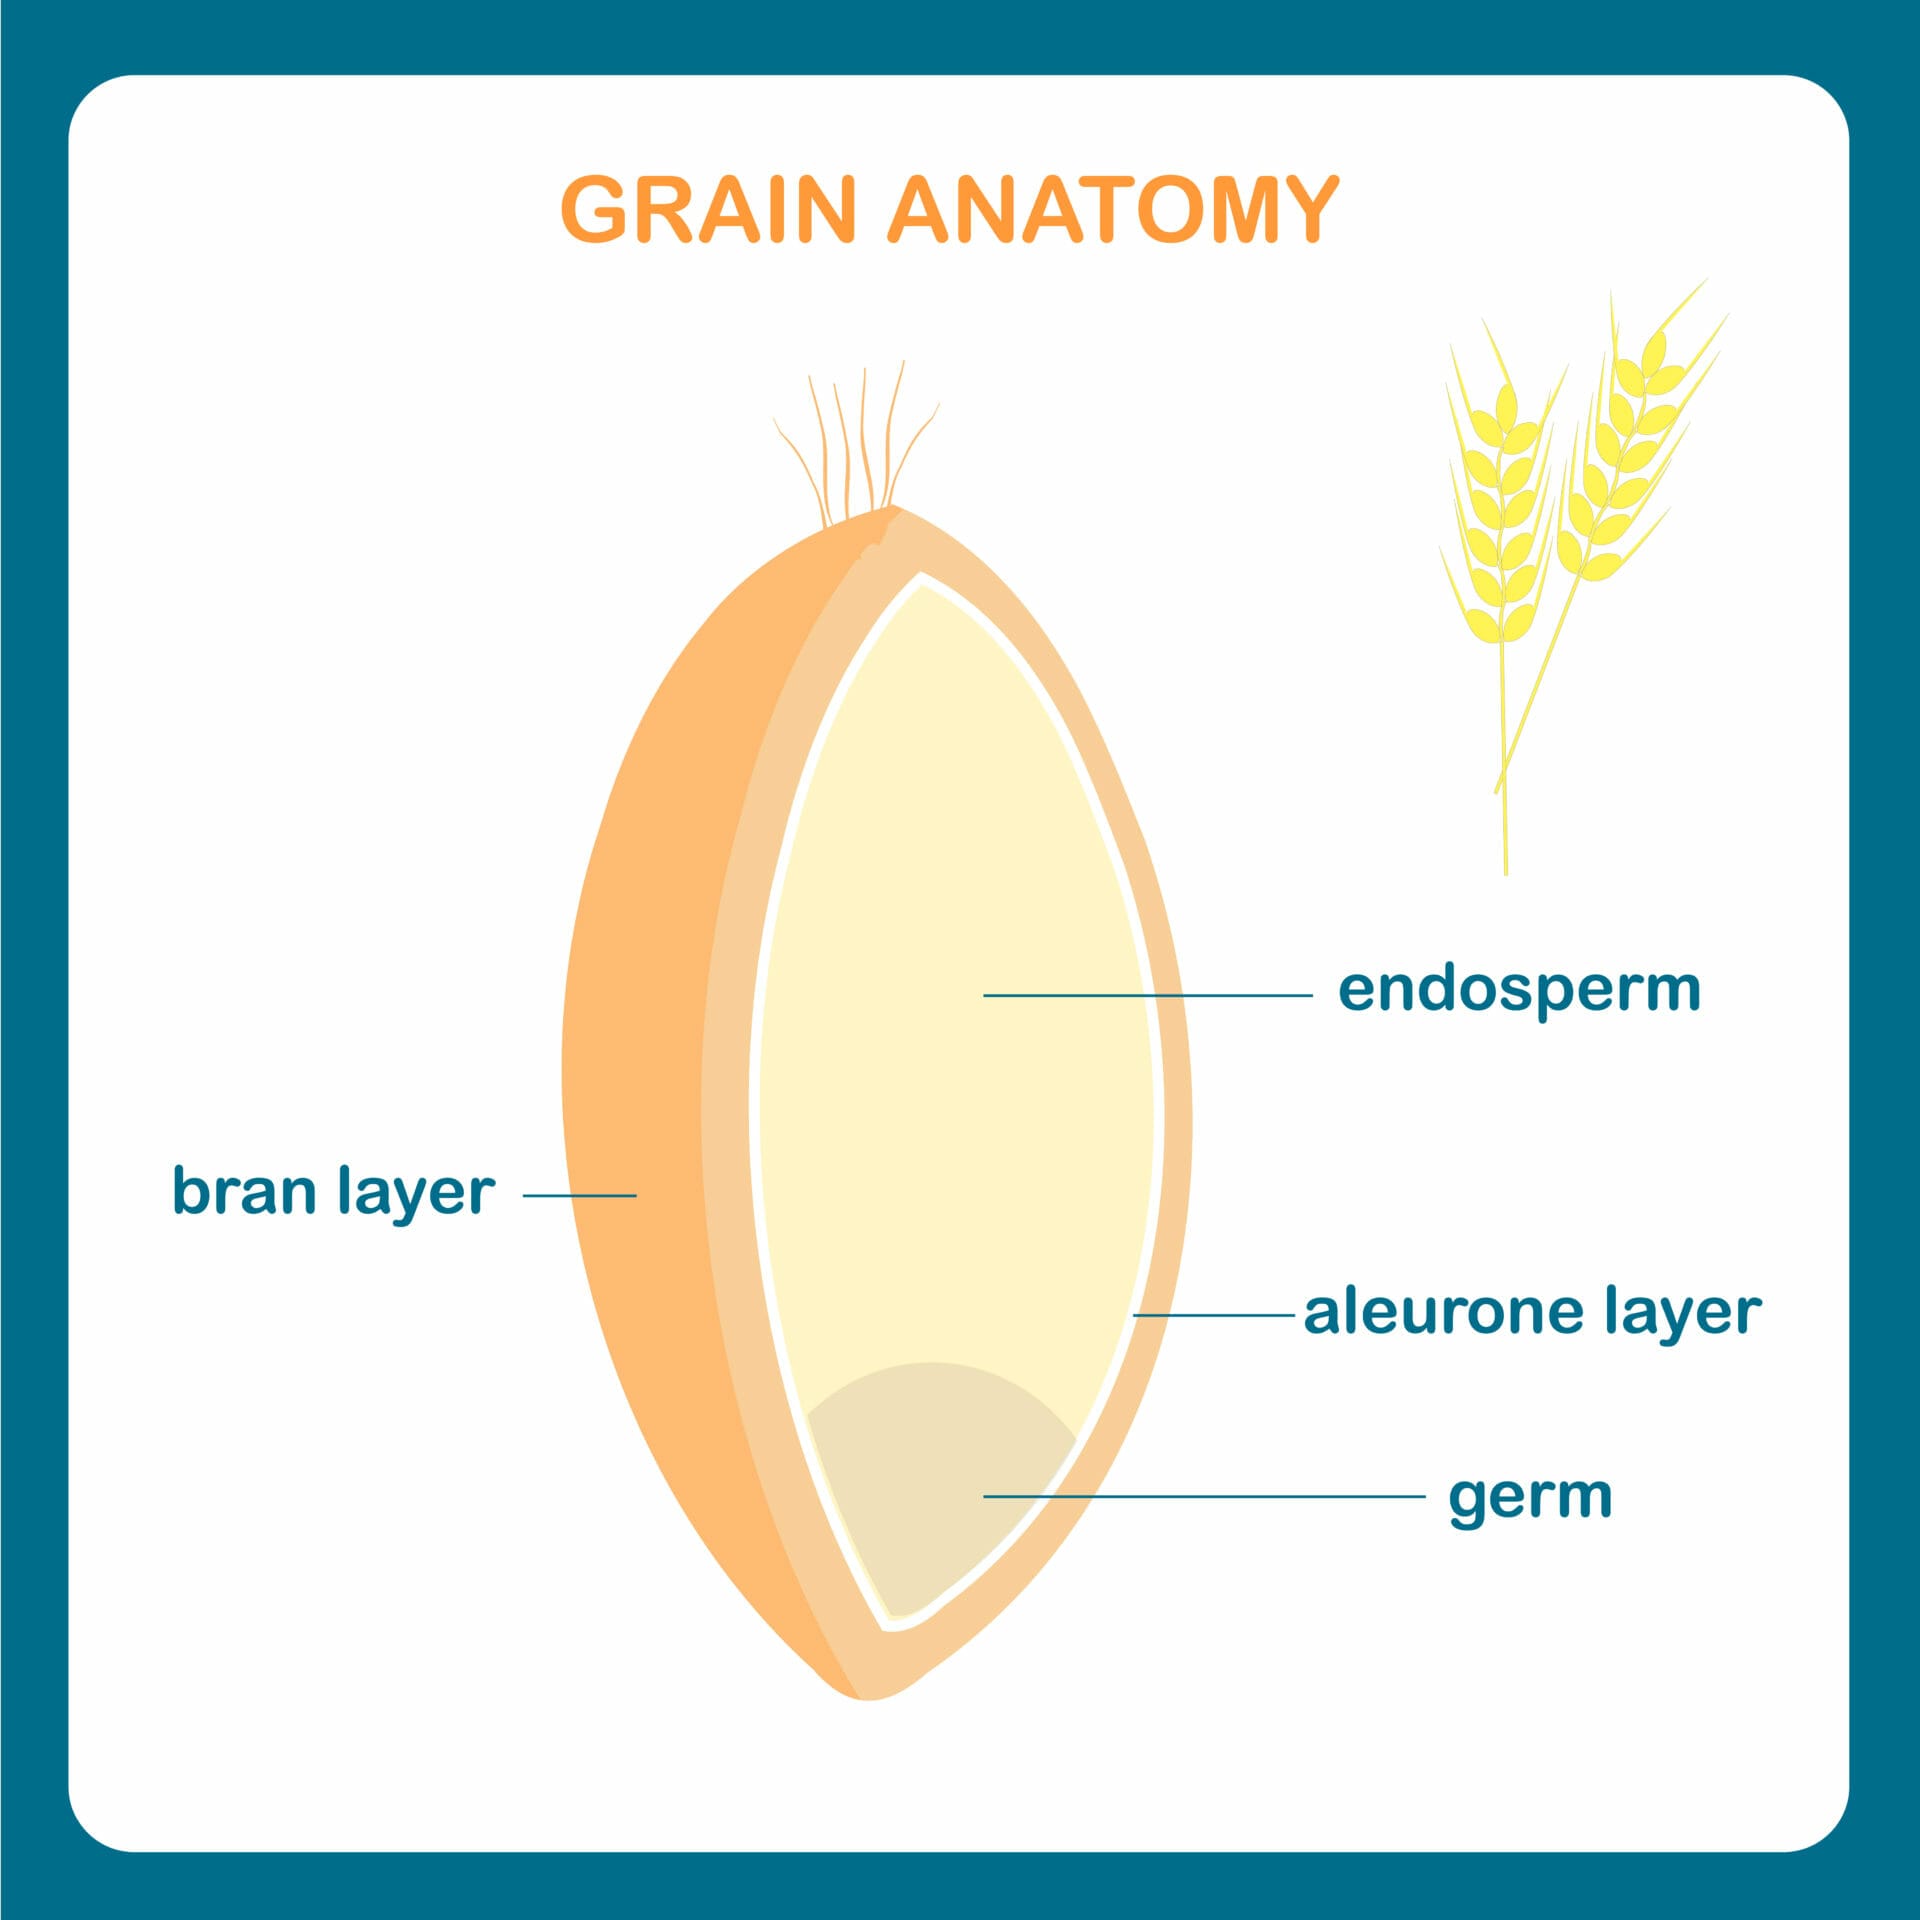 Grain anatomy scheme. Wreath grain, endosperm, bran layer, aleurone layer, germ.